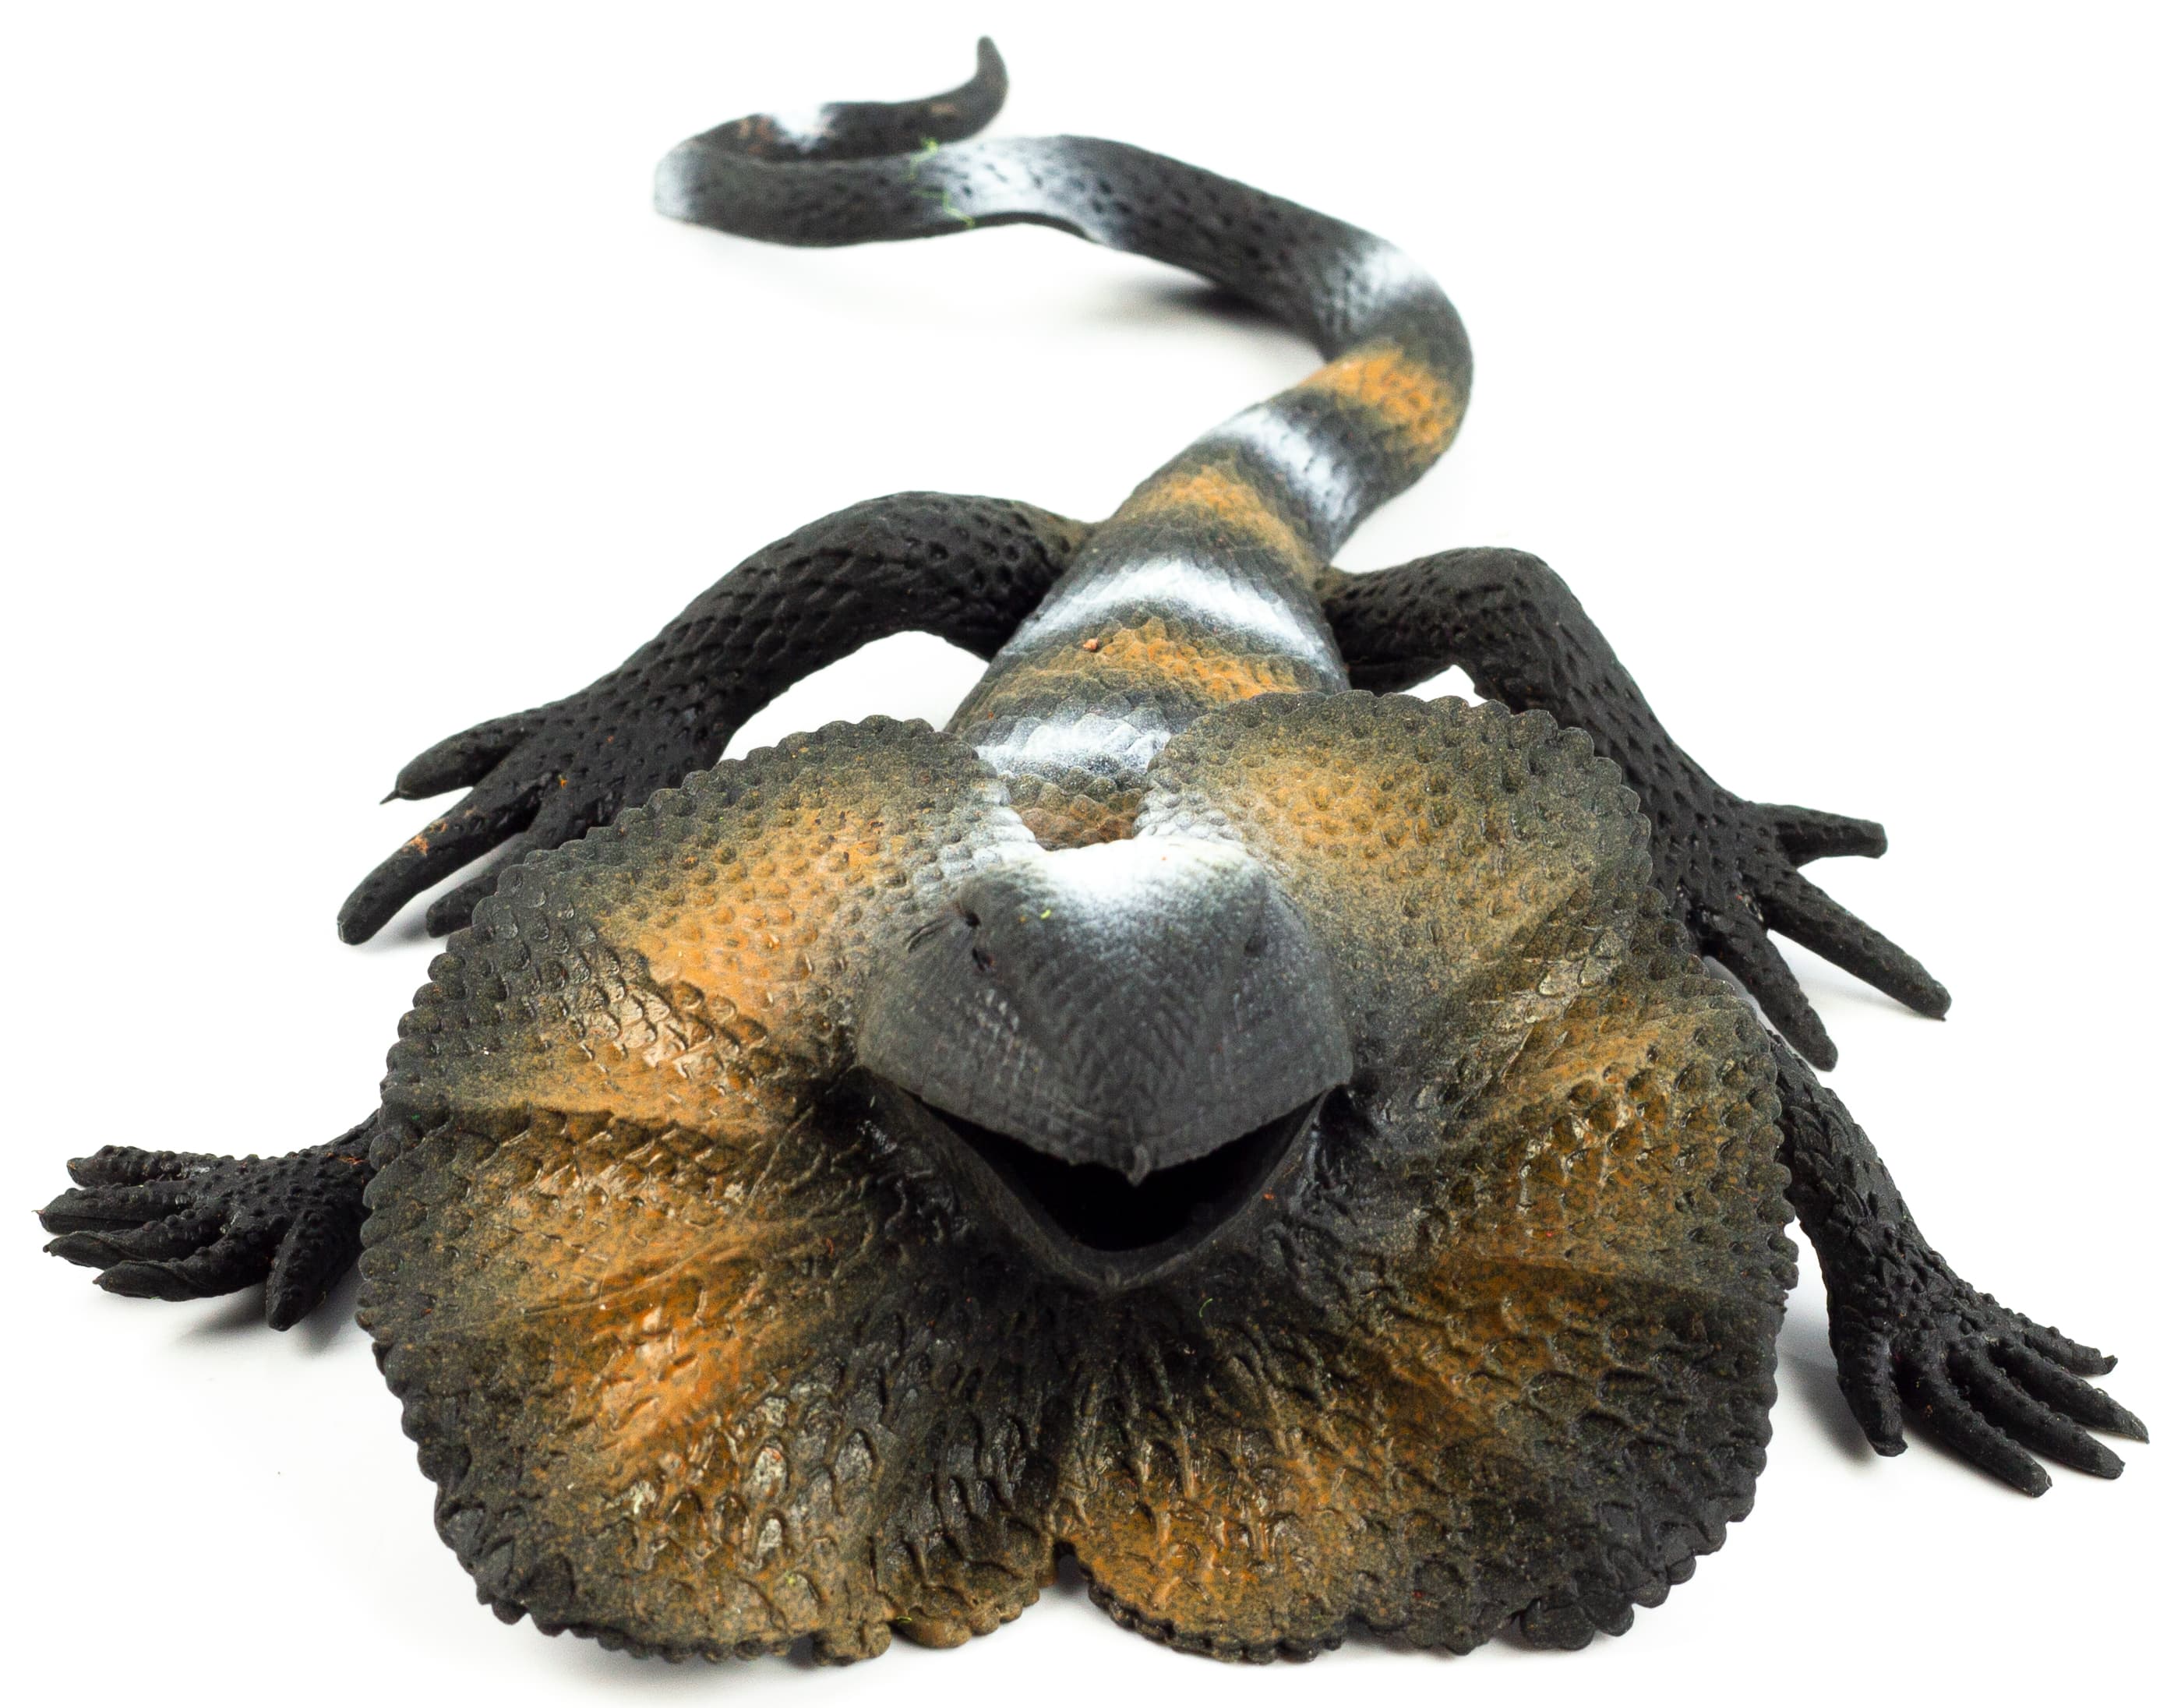 Игрушки резиновые фигурки-тянучки «Ящерицы» A160, 21-29 см. Антистресс / 6 шт.